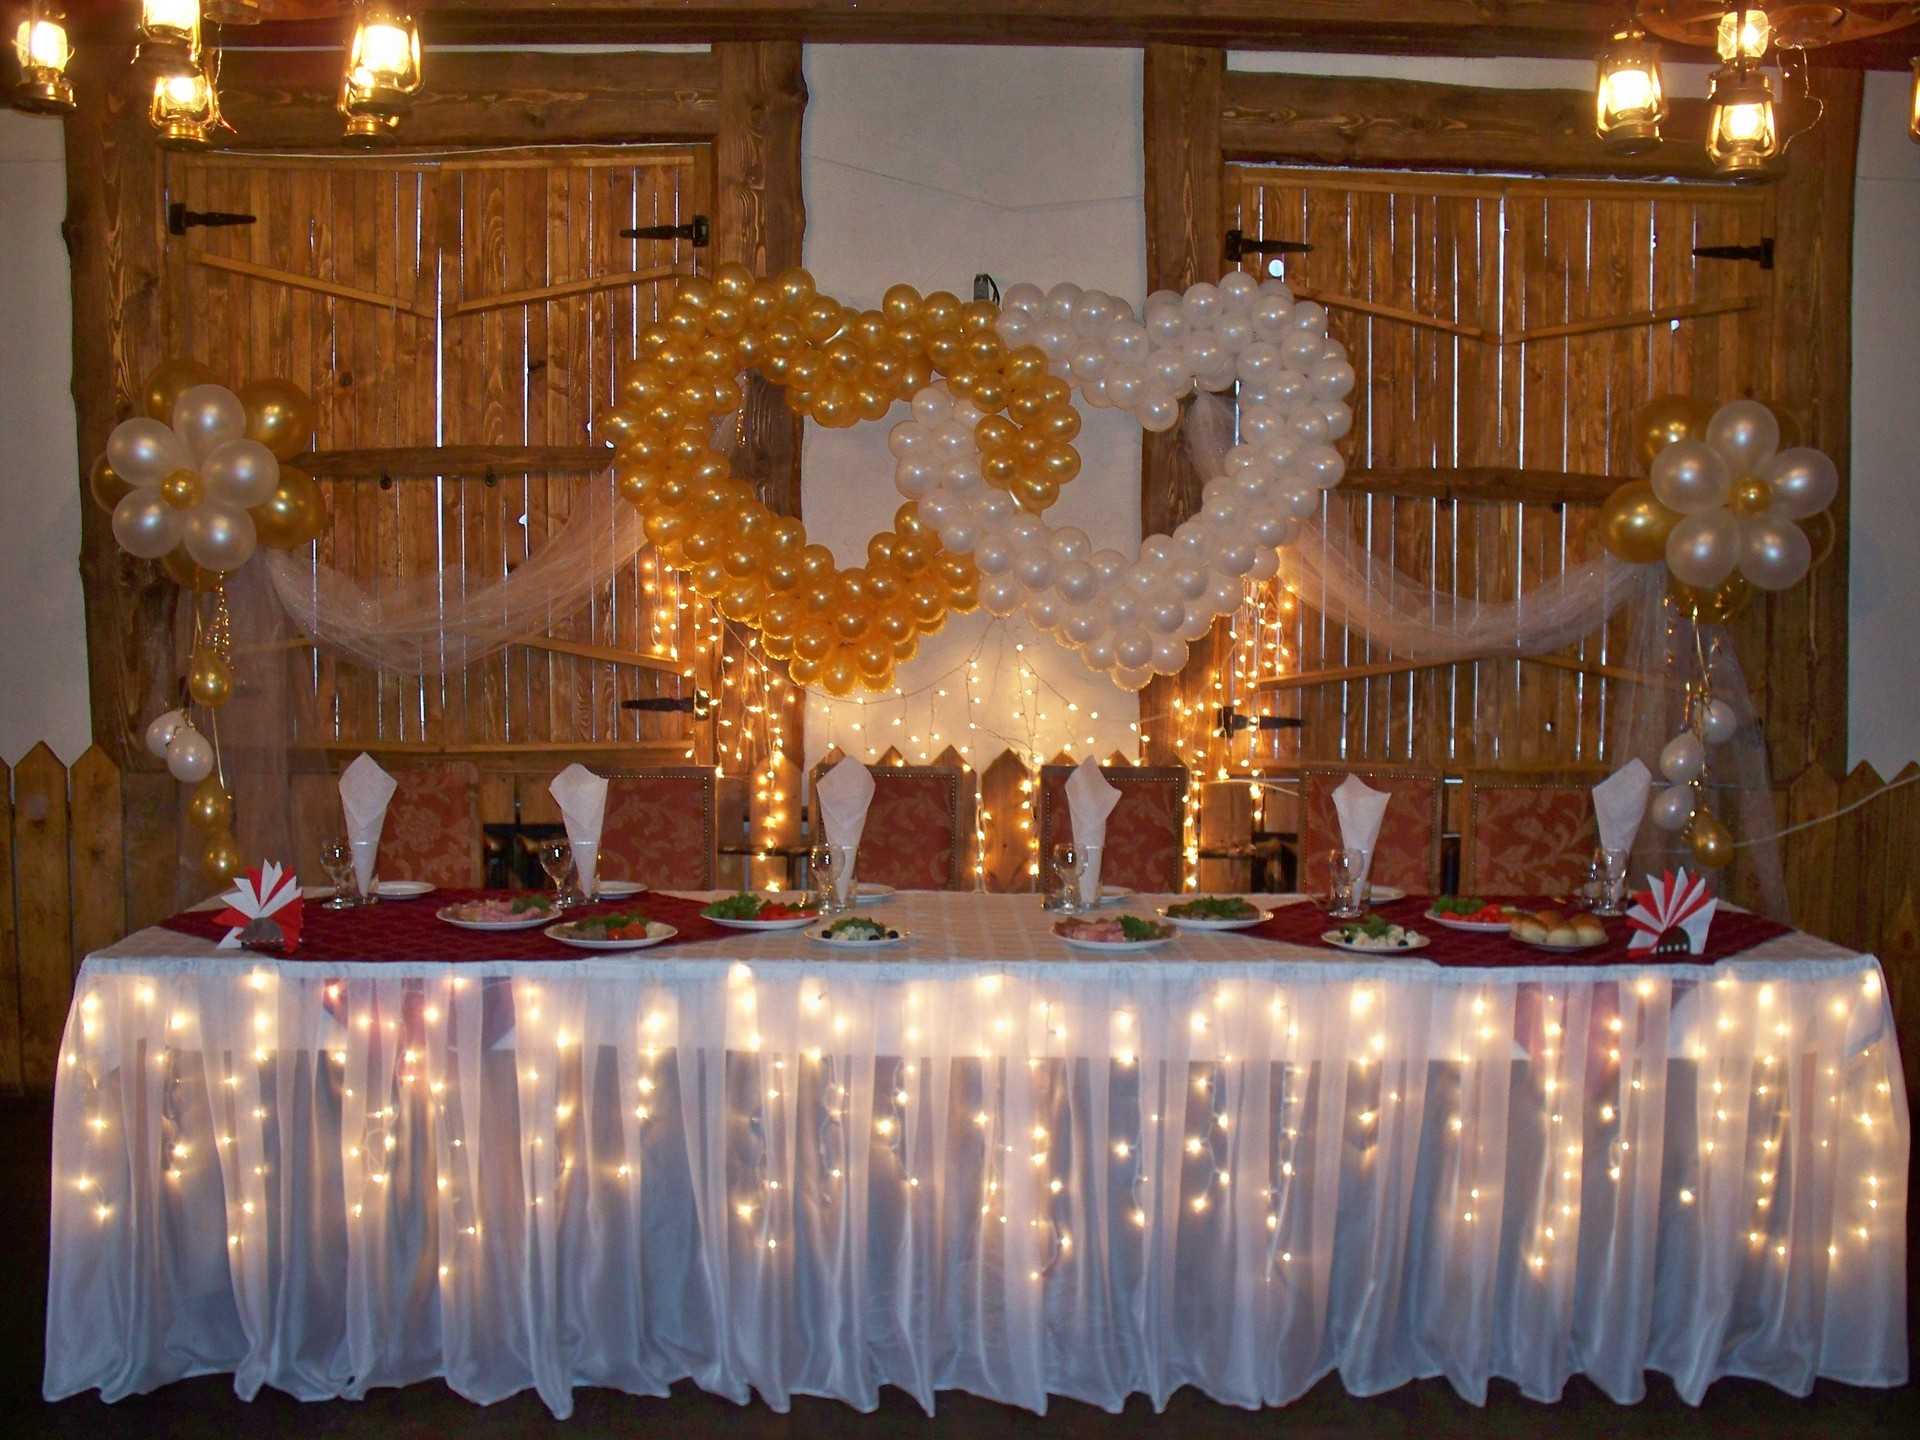 Оформление президиума на свадьбу: украшение стола молодых, правила декора и рекомендации (с фото), какие аксессуары использовать, как украсить своими руками